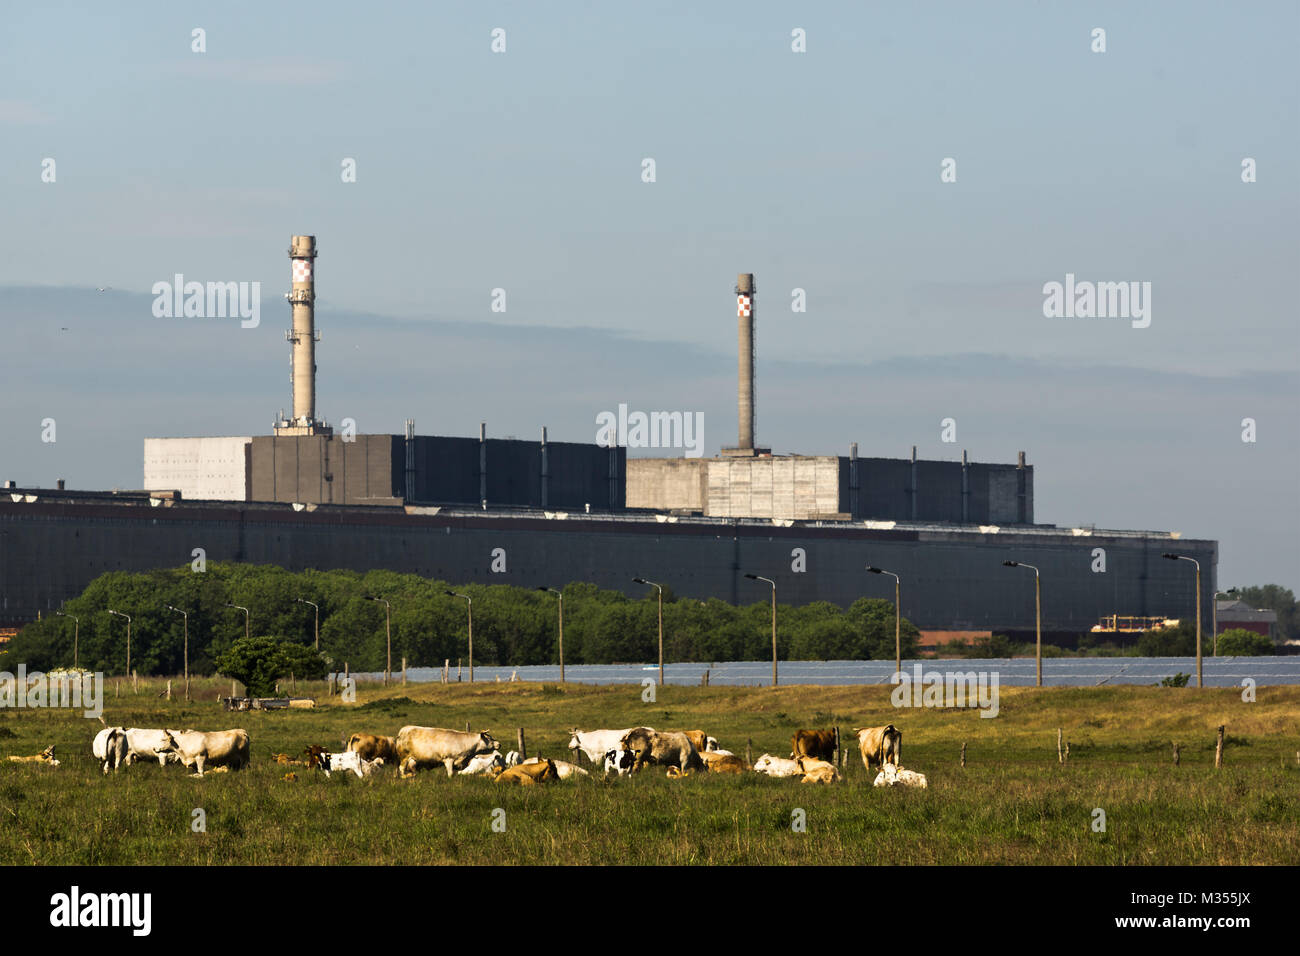 Das frühere DDR-Atomkraftwerk Greifswald-Lubmin ( Das Kernkraftwerk hieß offiziell „VE Kombinat Kernkraftwerke 'Bruno Leuschner' Greifswald“ ) mit angrenzenden Zwischenlager Nord. Stock Photo